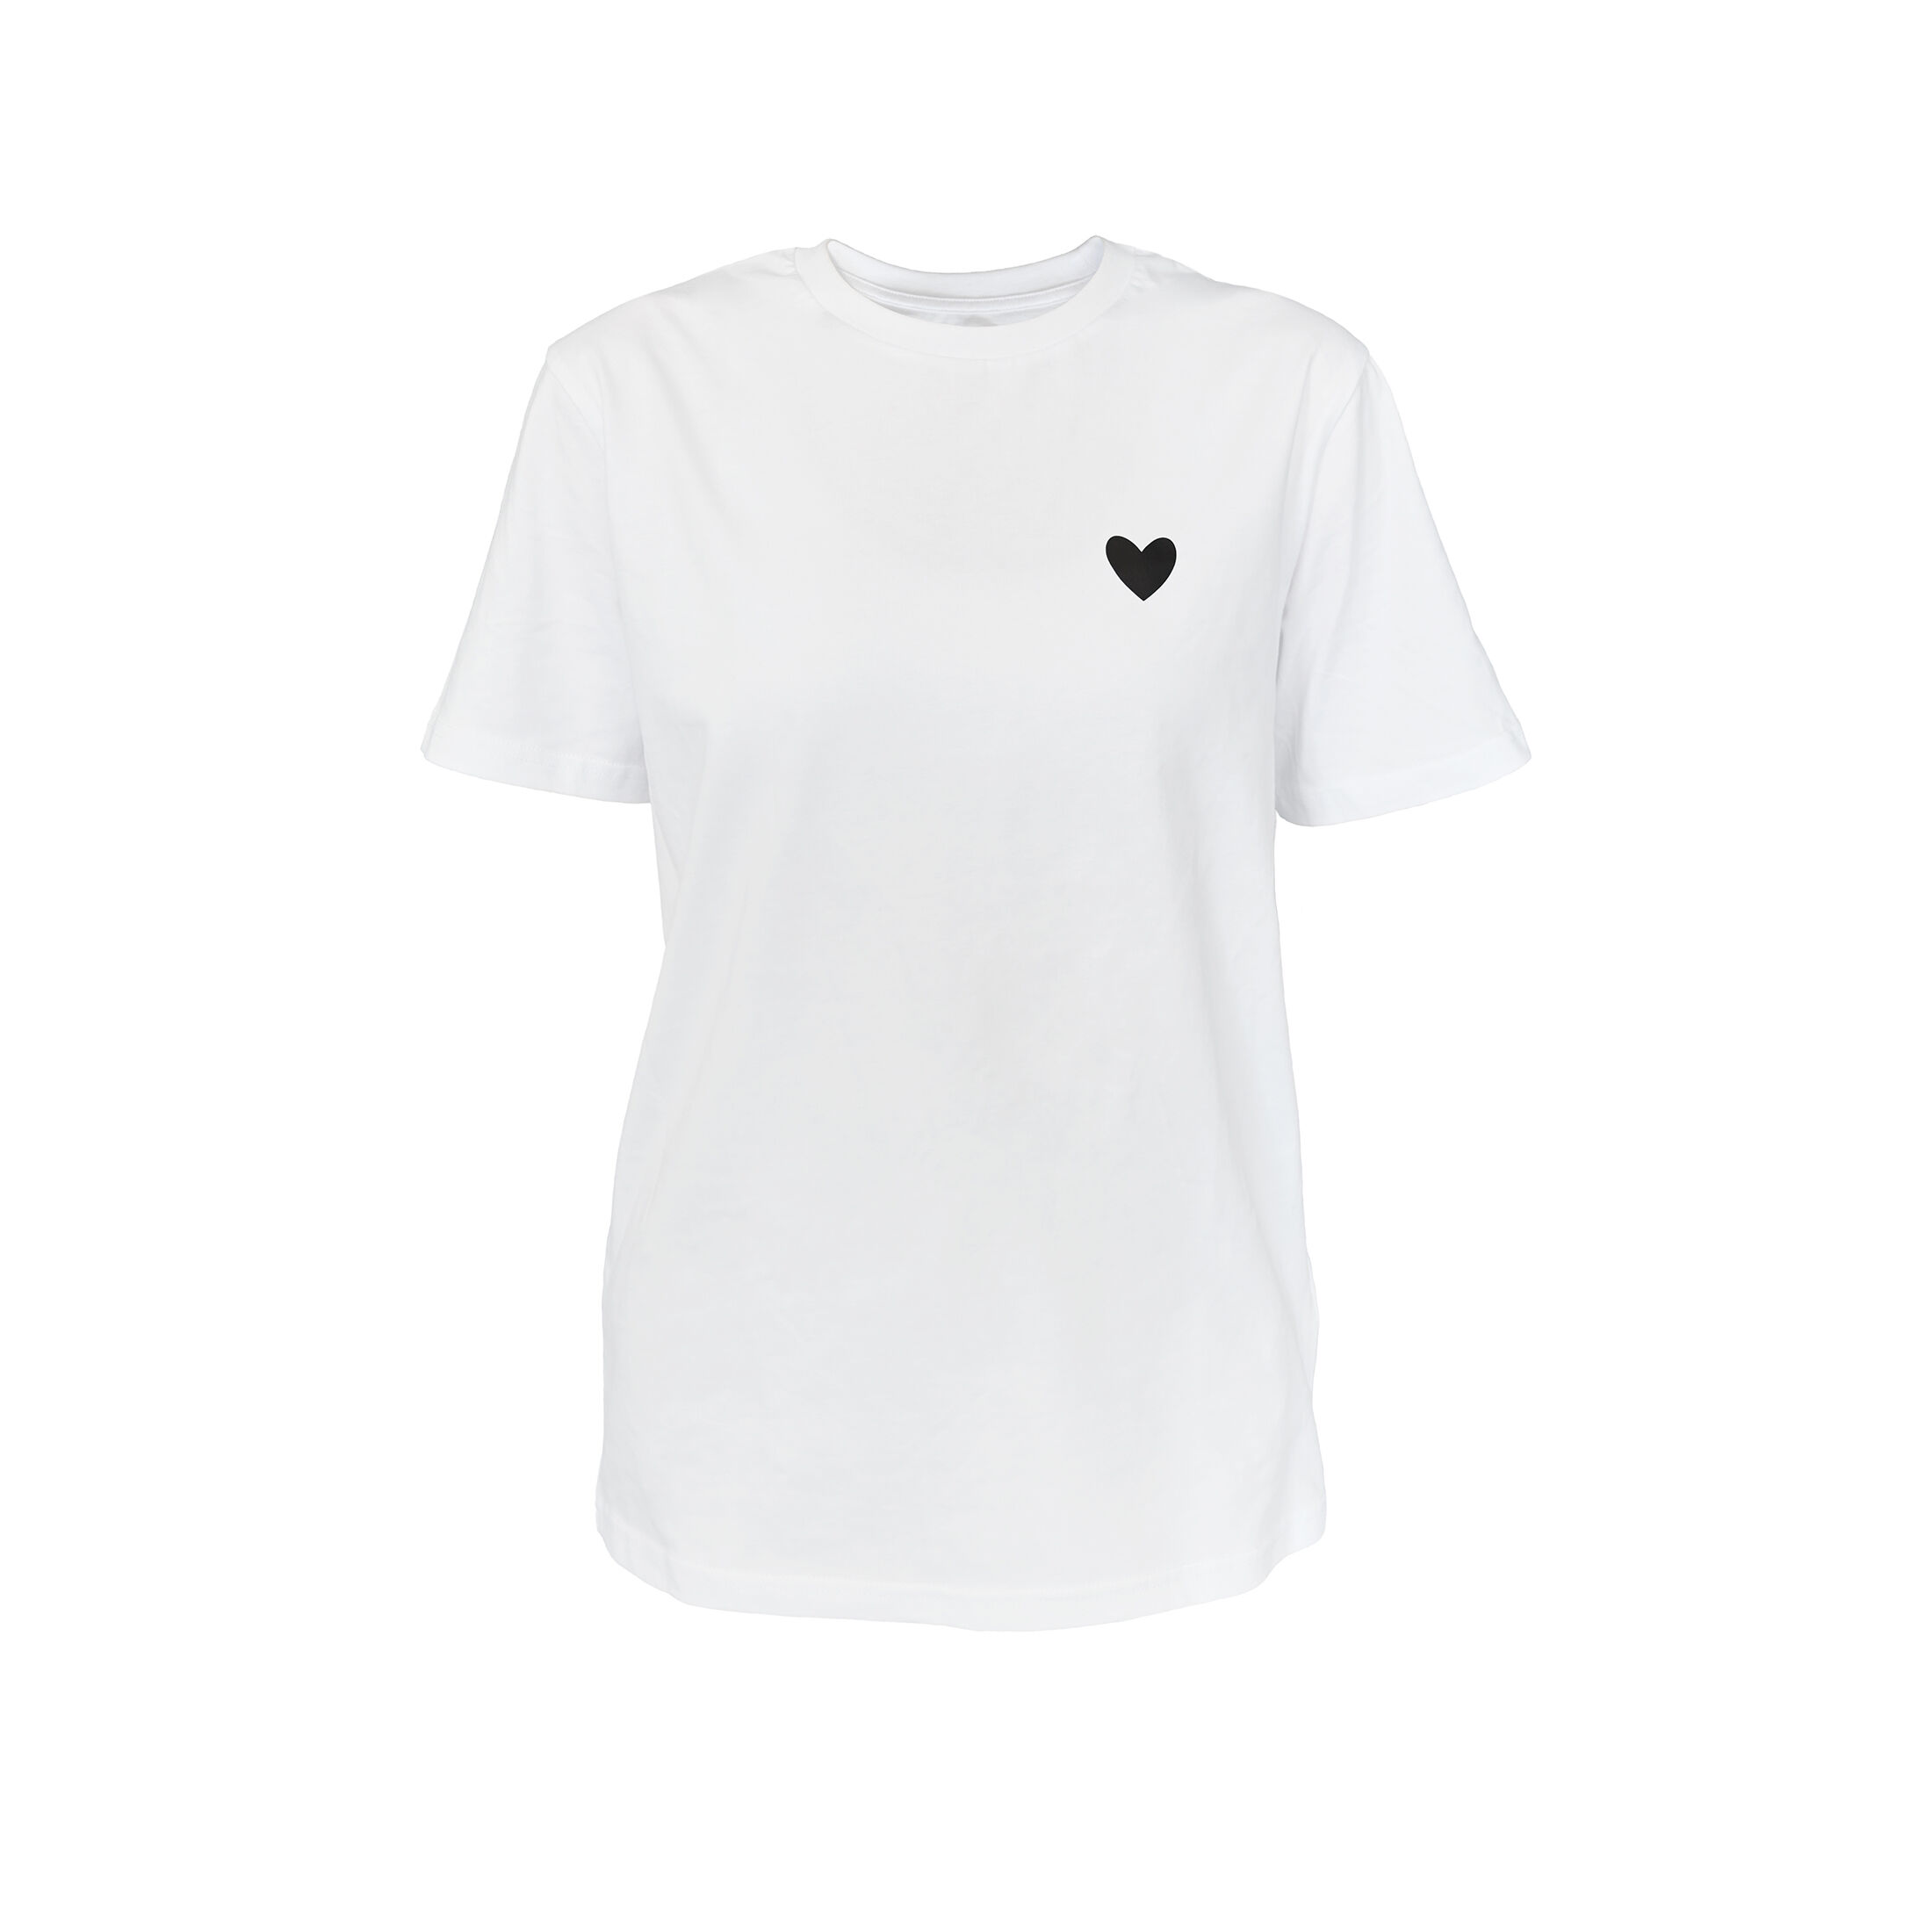 JODIE T-Shirt Weiss Schwarz kaufen jetzt T-Shirt für Herz Damen CRICKIT